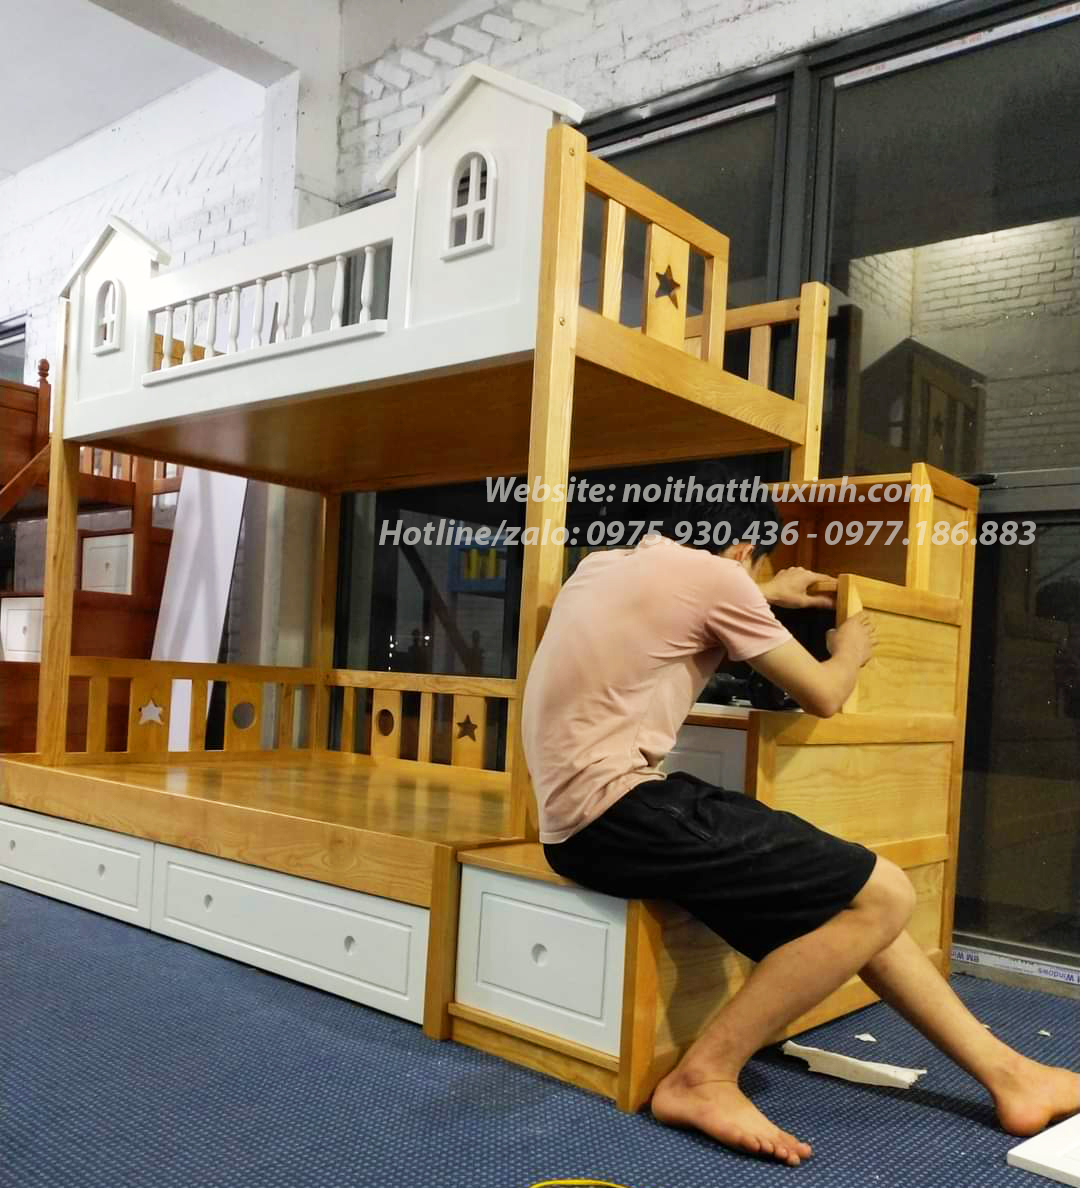 Nội thất Thu Xinh- Nơi sản xuất giường tầng giá rẻ, uy tín tại Hà Nội